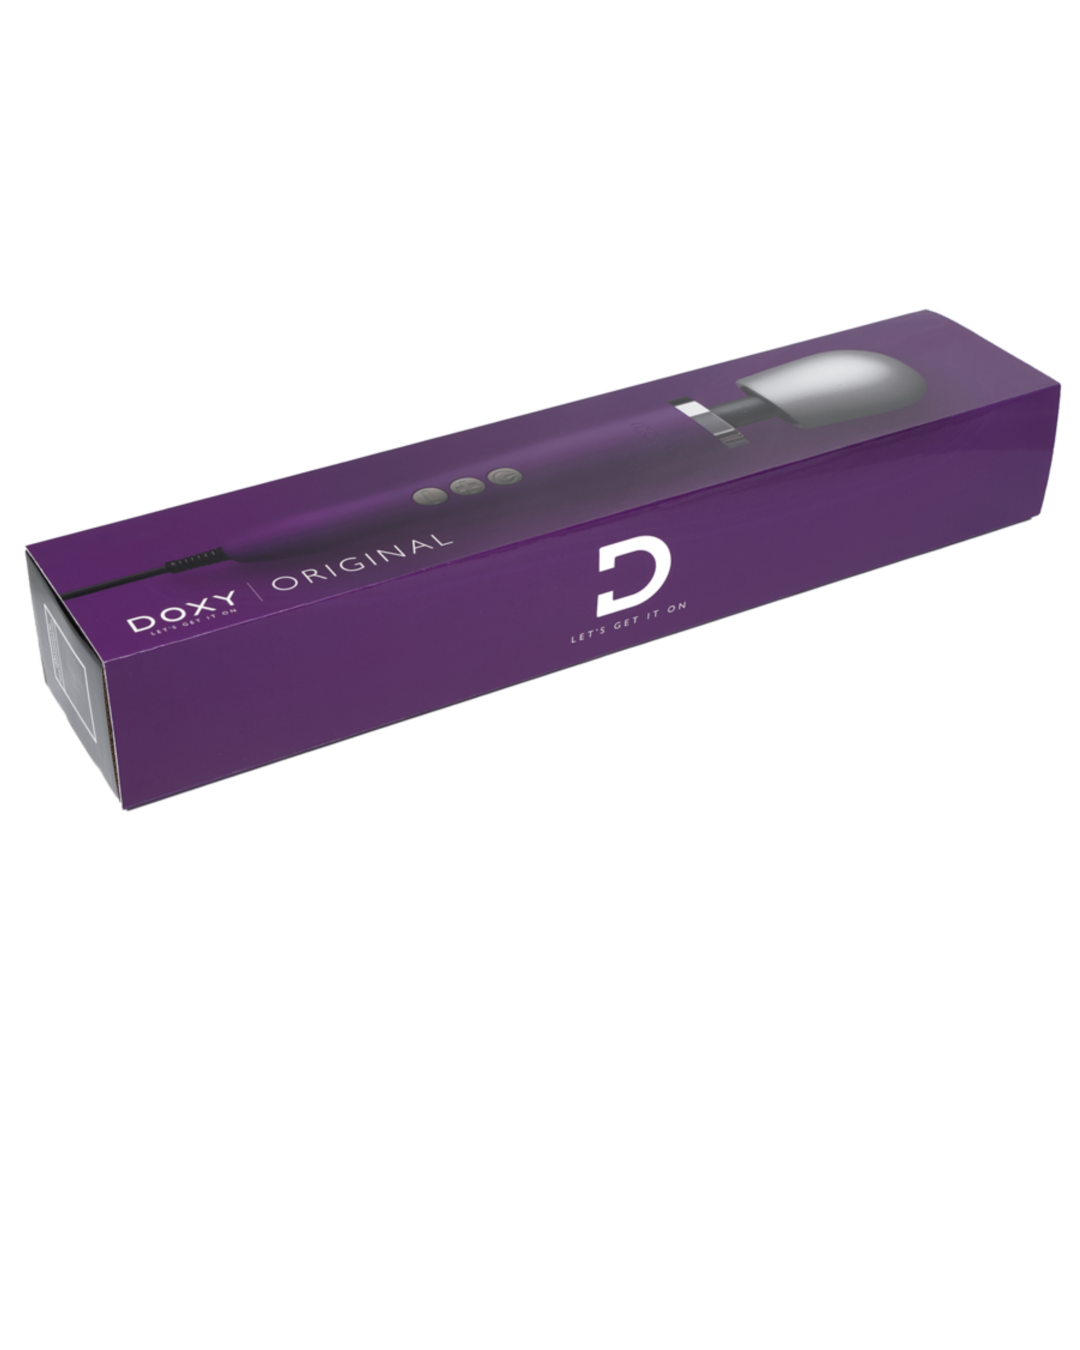 Doxy Extra Powerful Massage Wand Vibrator Purple box with lid on it 